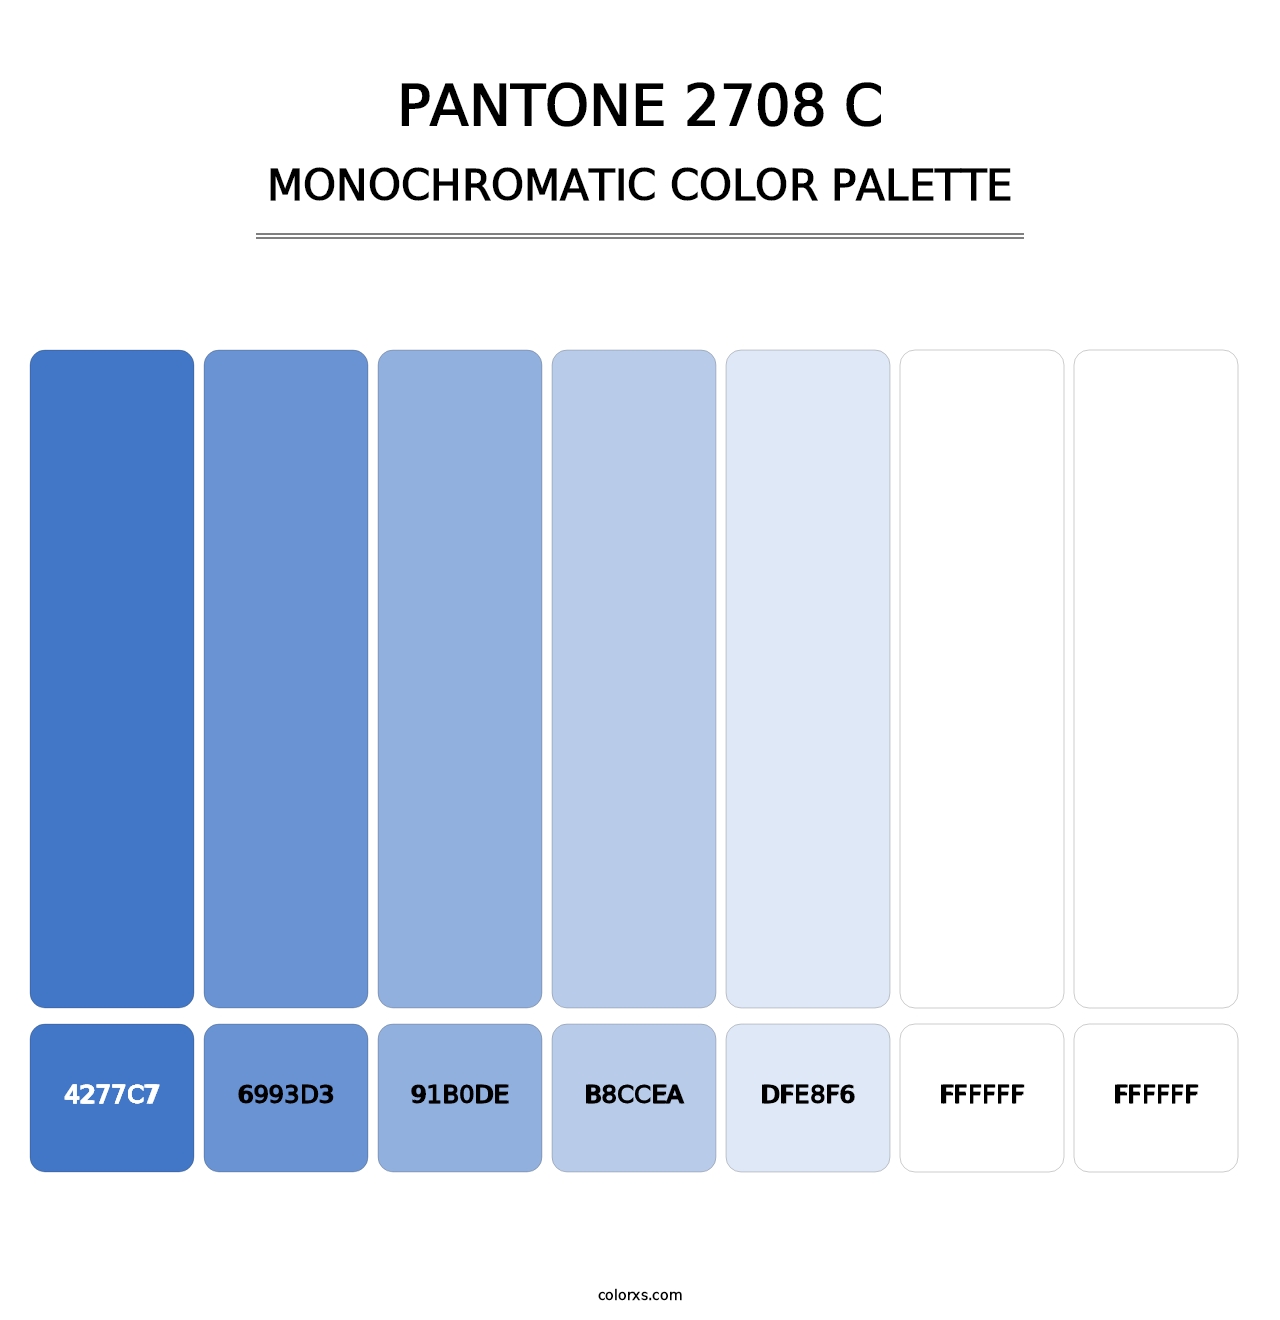 PANTONE 2708 C - Monochromatic Color Palette